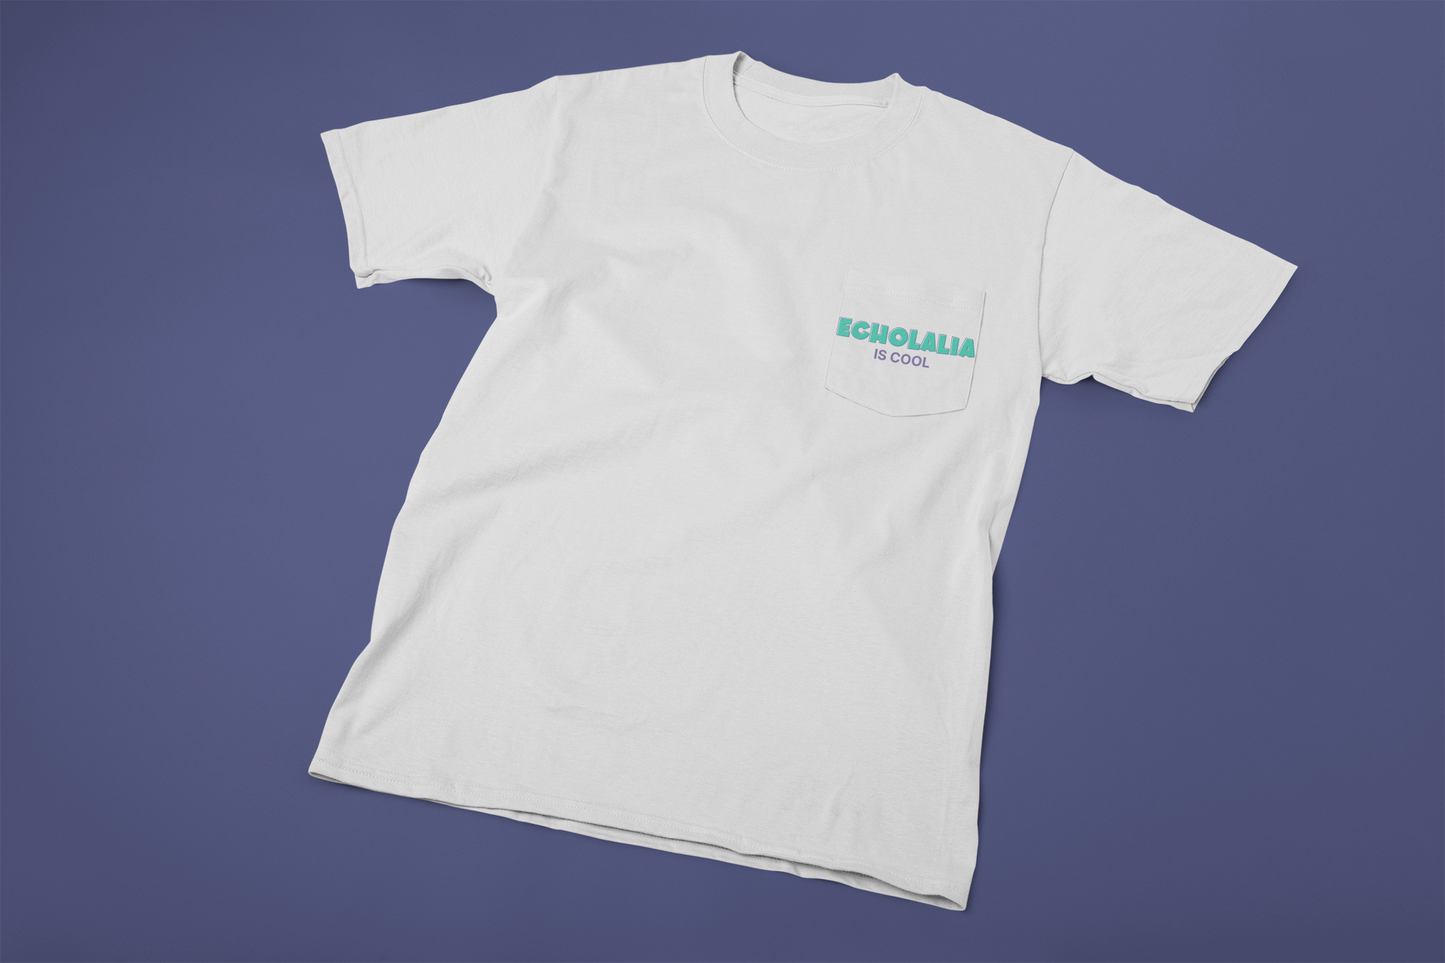 Echolalia Is Cool T-Shirt